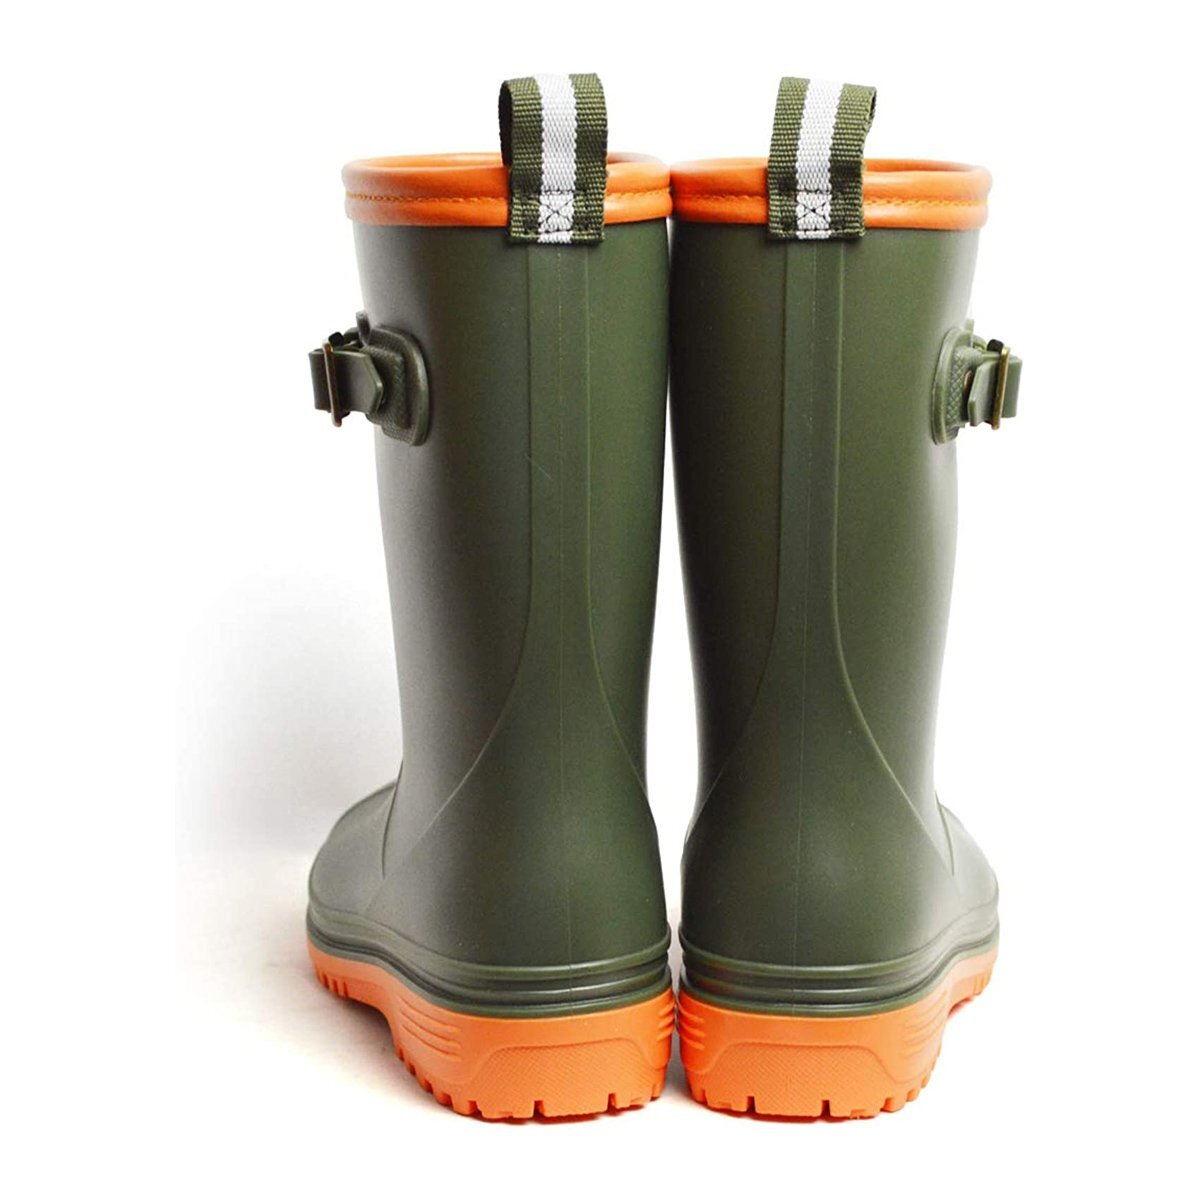  новый товар ■24cm  детский   дождь   ботинки   водонепроницаемый   обувь   ... обувь   легкий (по весу)   резина  ... вода  ... ... ключ  ботинки   простой   подросток   ребенок   дождь   обувь   модный  